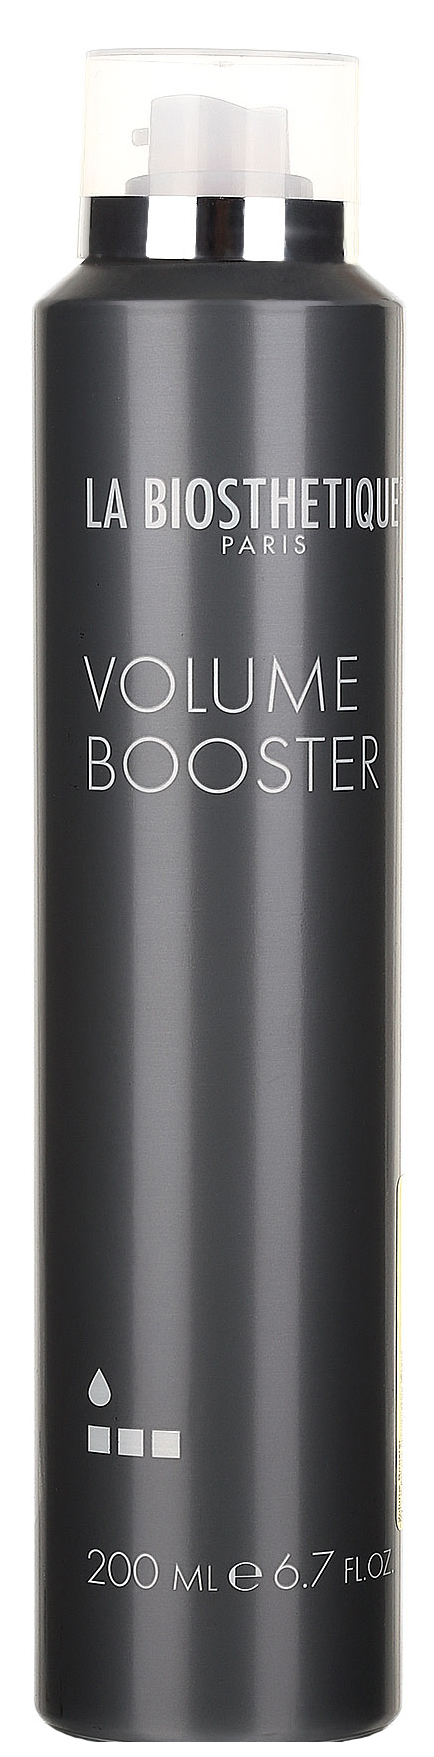 Мусс для волос La Biosthetique Base Volume Booster 200 мл мусс для укладки волос syoss volume lift экстрасильная фиксация 4 250 мл